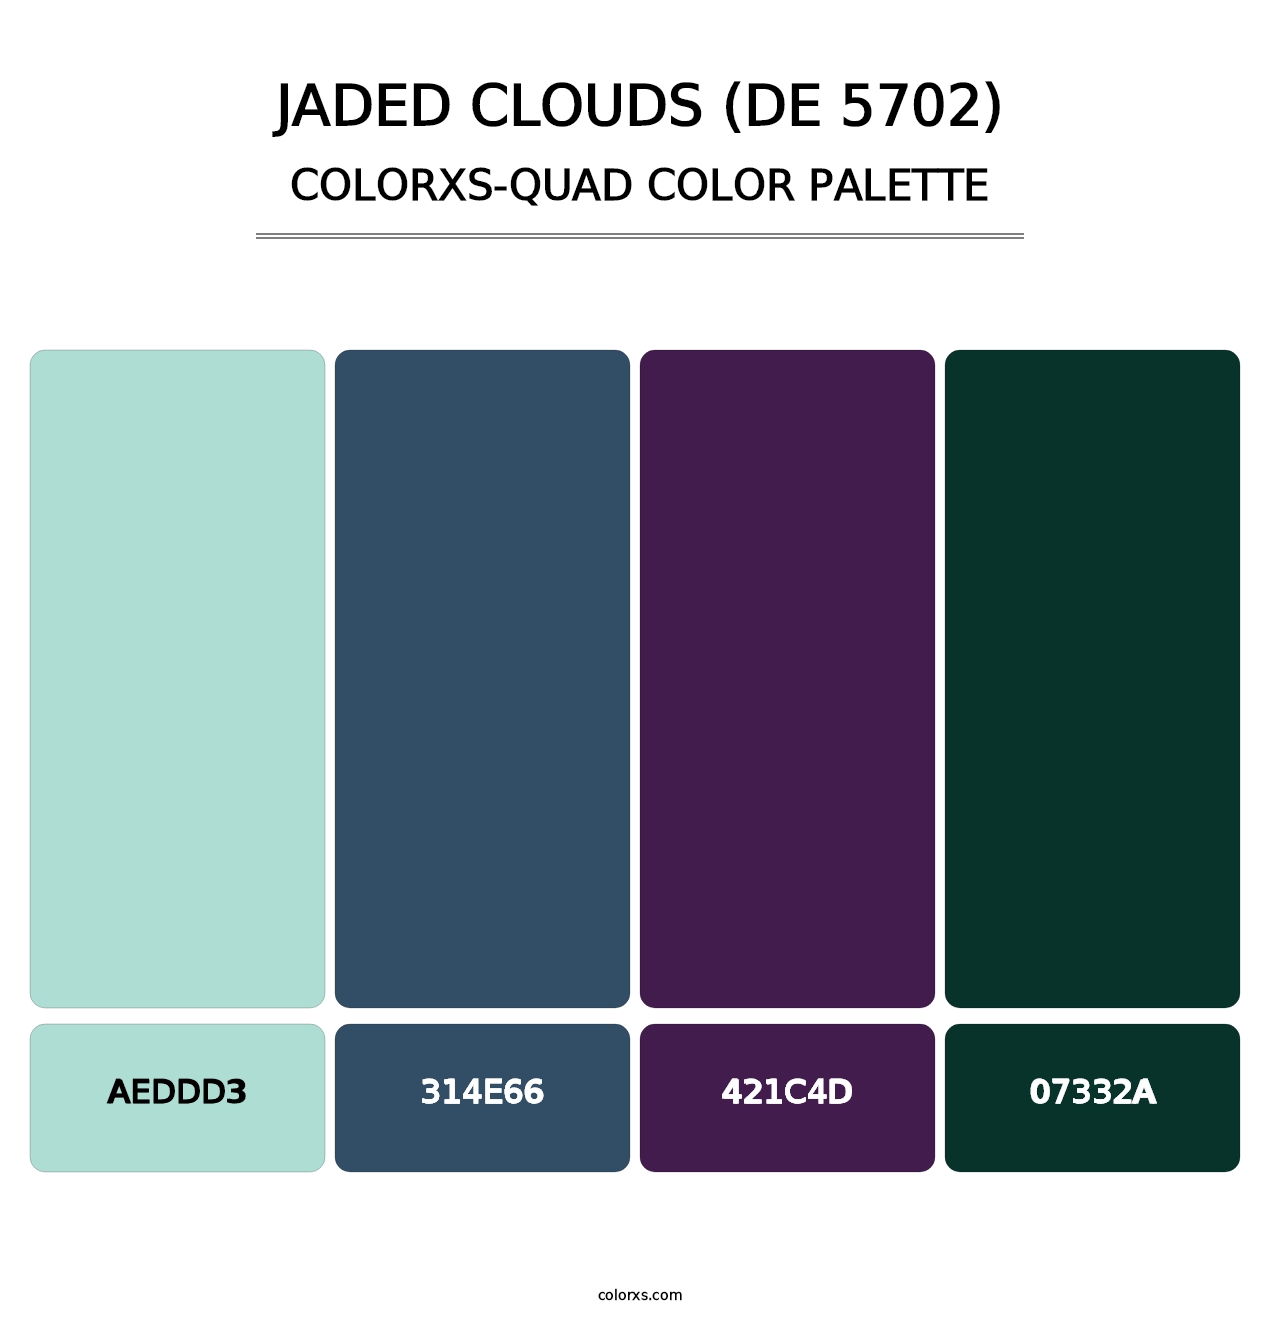 Jaded Clouds (DE 5702) - Colorxs Quad Palette